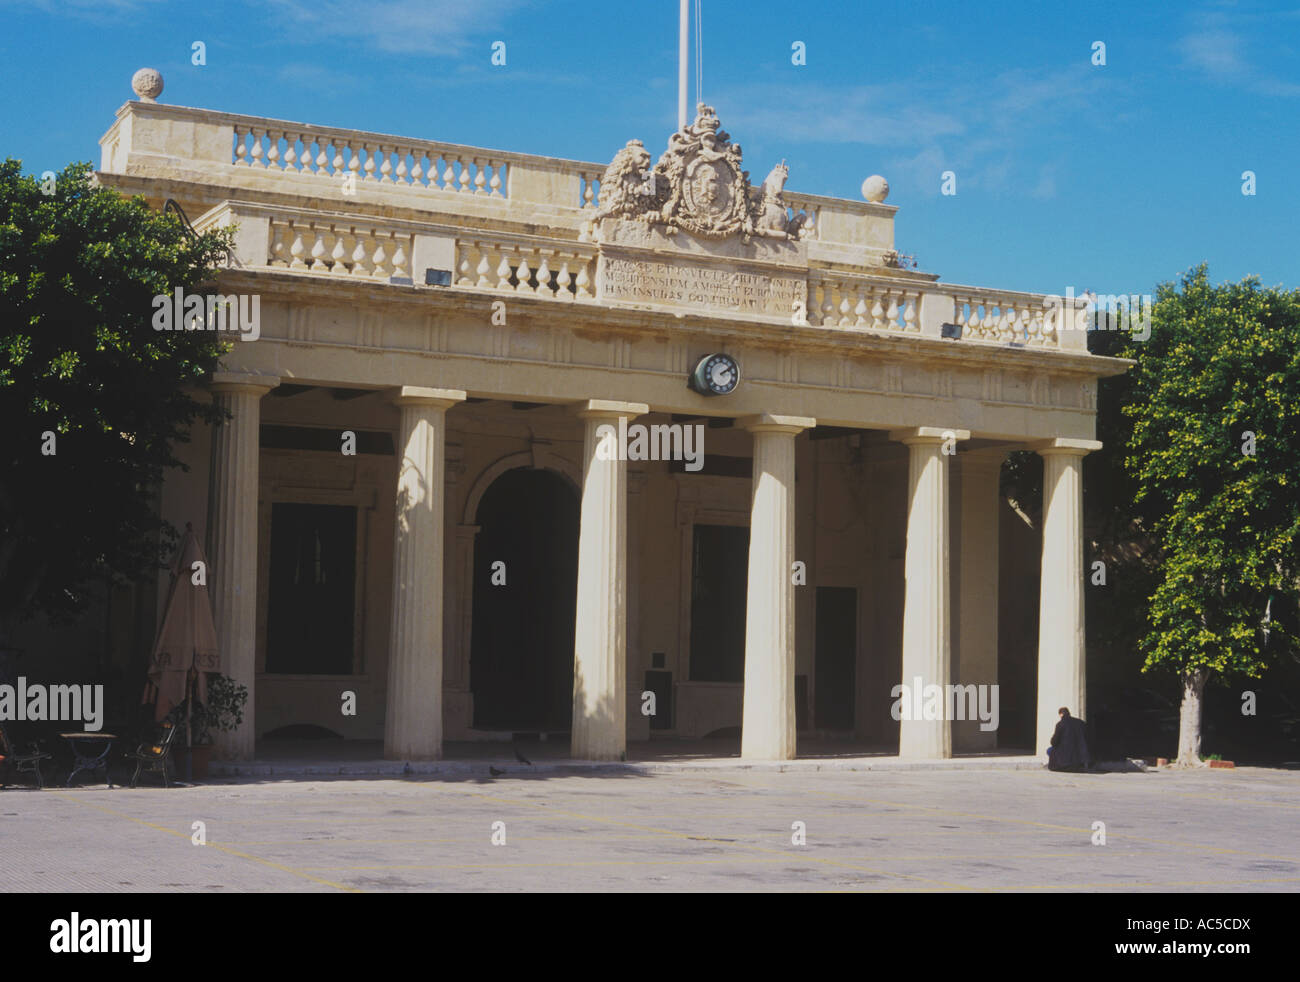 Maison de gardien, le palais présidentiel, de la Place du Palais, La Valette, Malte Banque D'Images